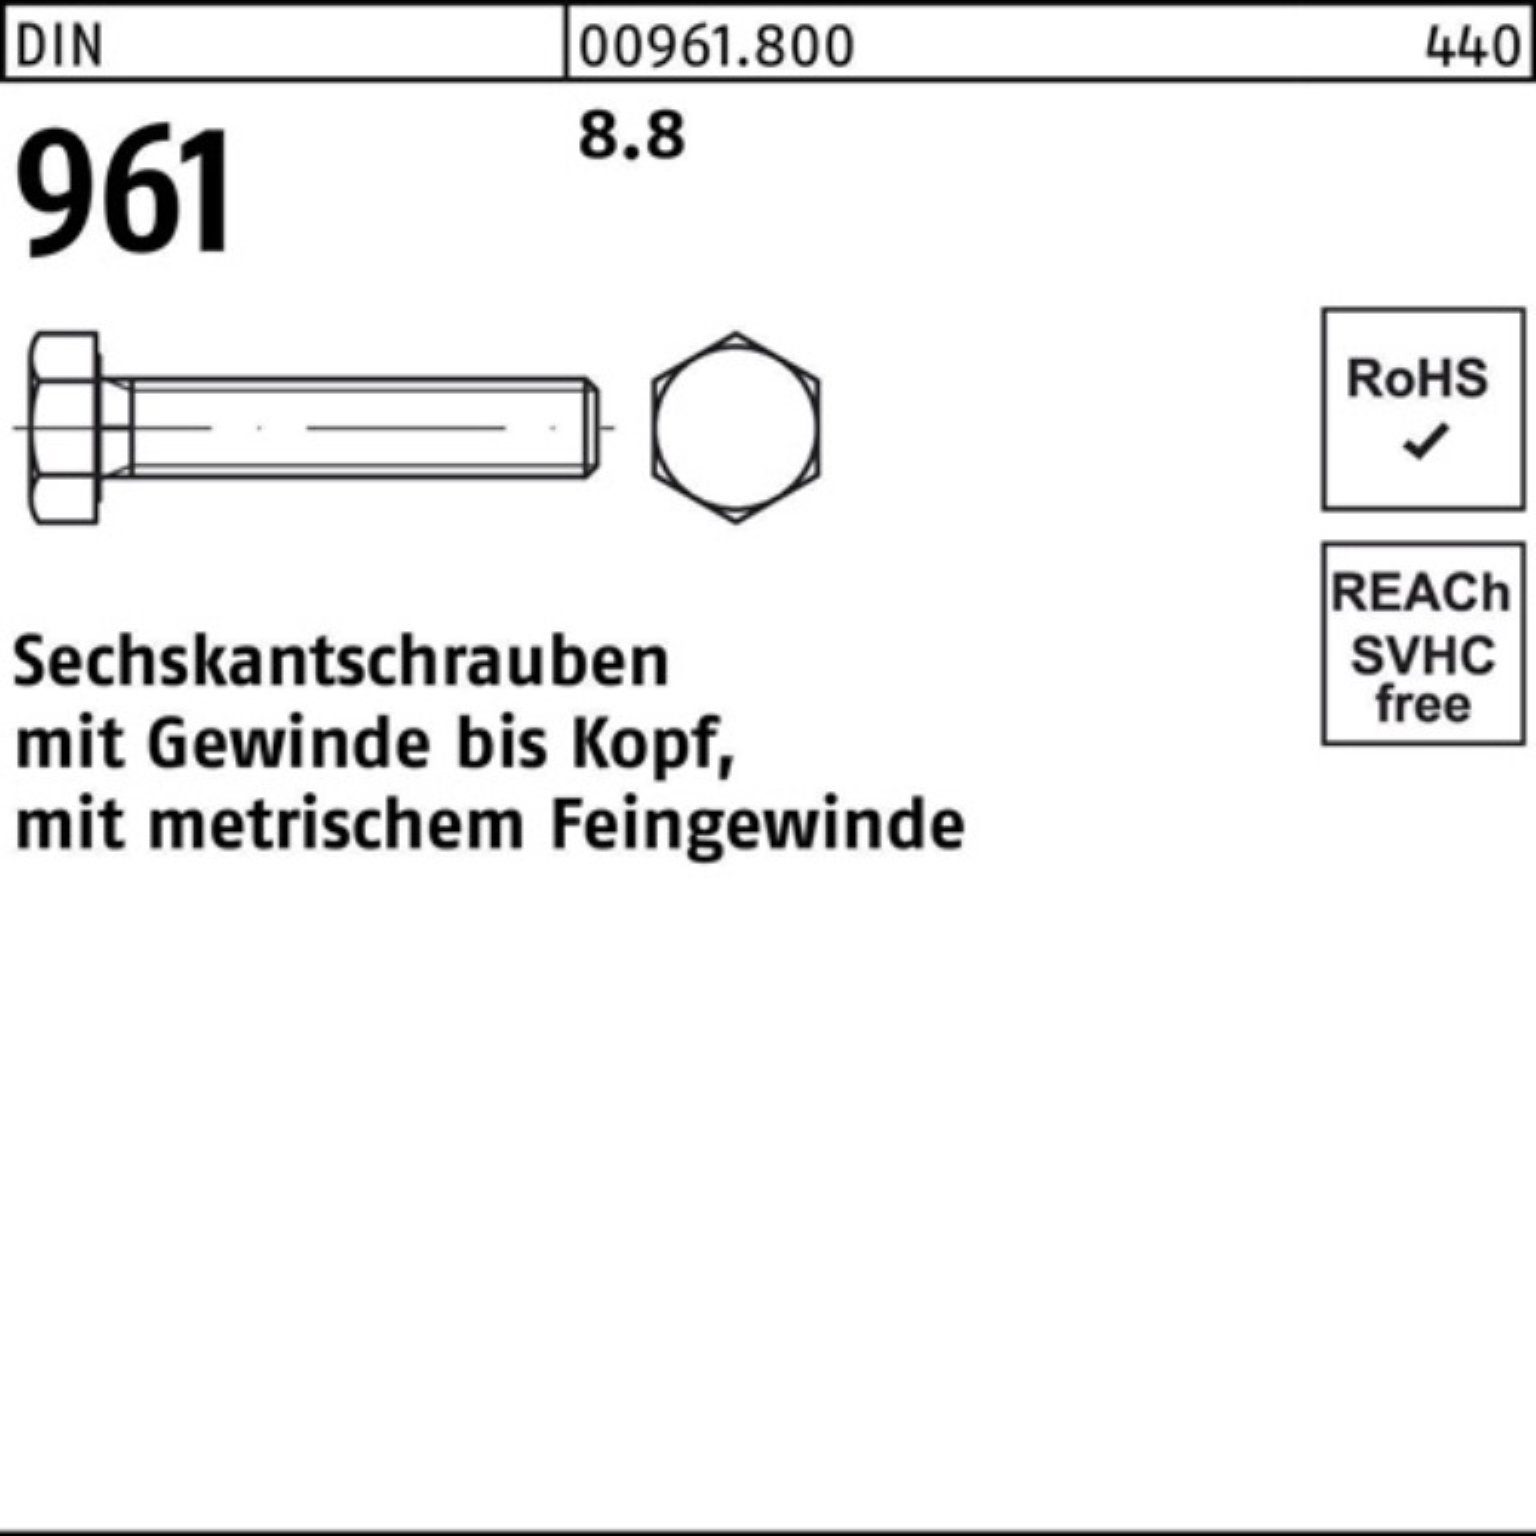 Reyher Sechskantschraube 100er Pack DIN VG 75 50 961 8.8 Sechskantschraube Stück DIN M14x1,5x